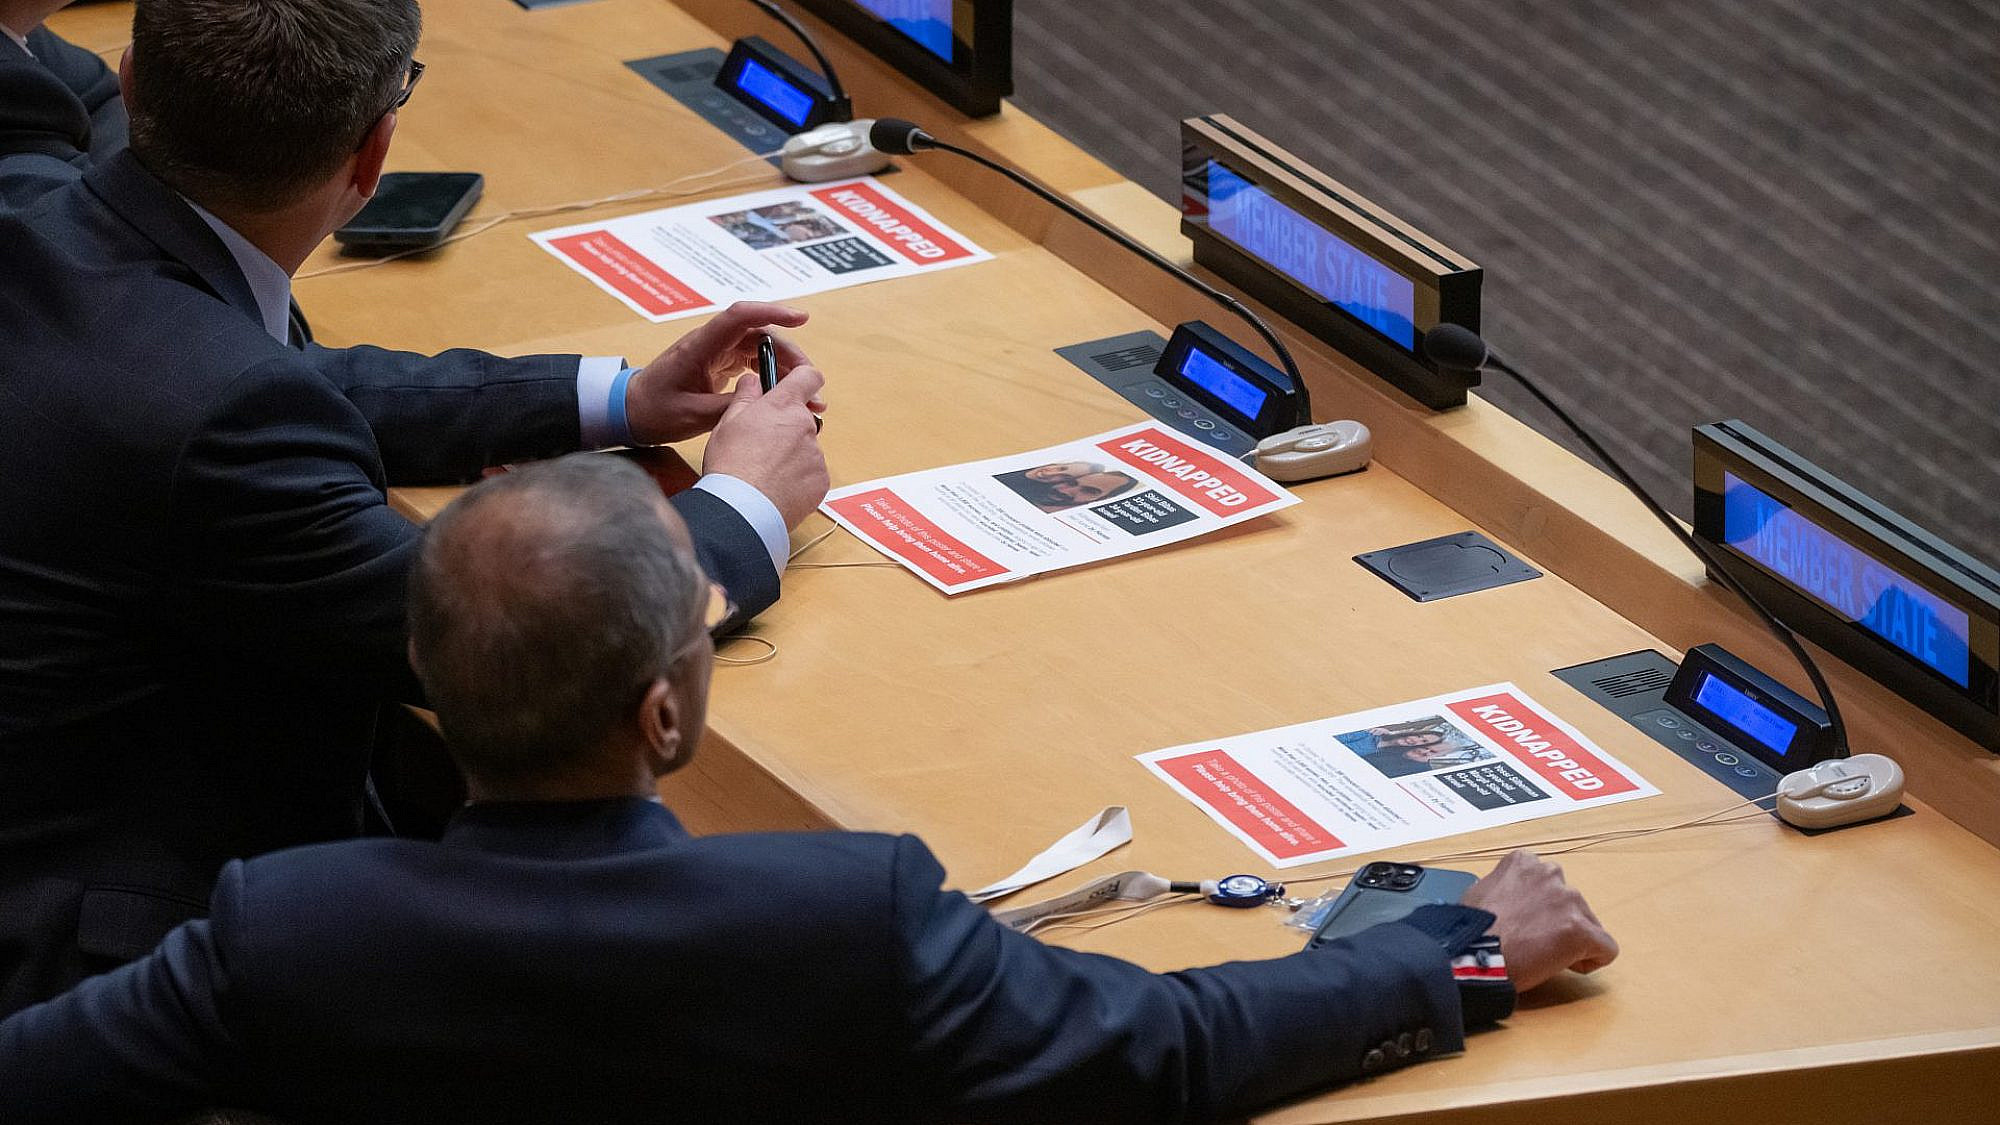 הקמפיין של ניצן מינץ ודדה על שולחנם של בכירים באו"ם, 13.10 (צילום: נועם גלאי/גטי אימג'ס)